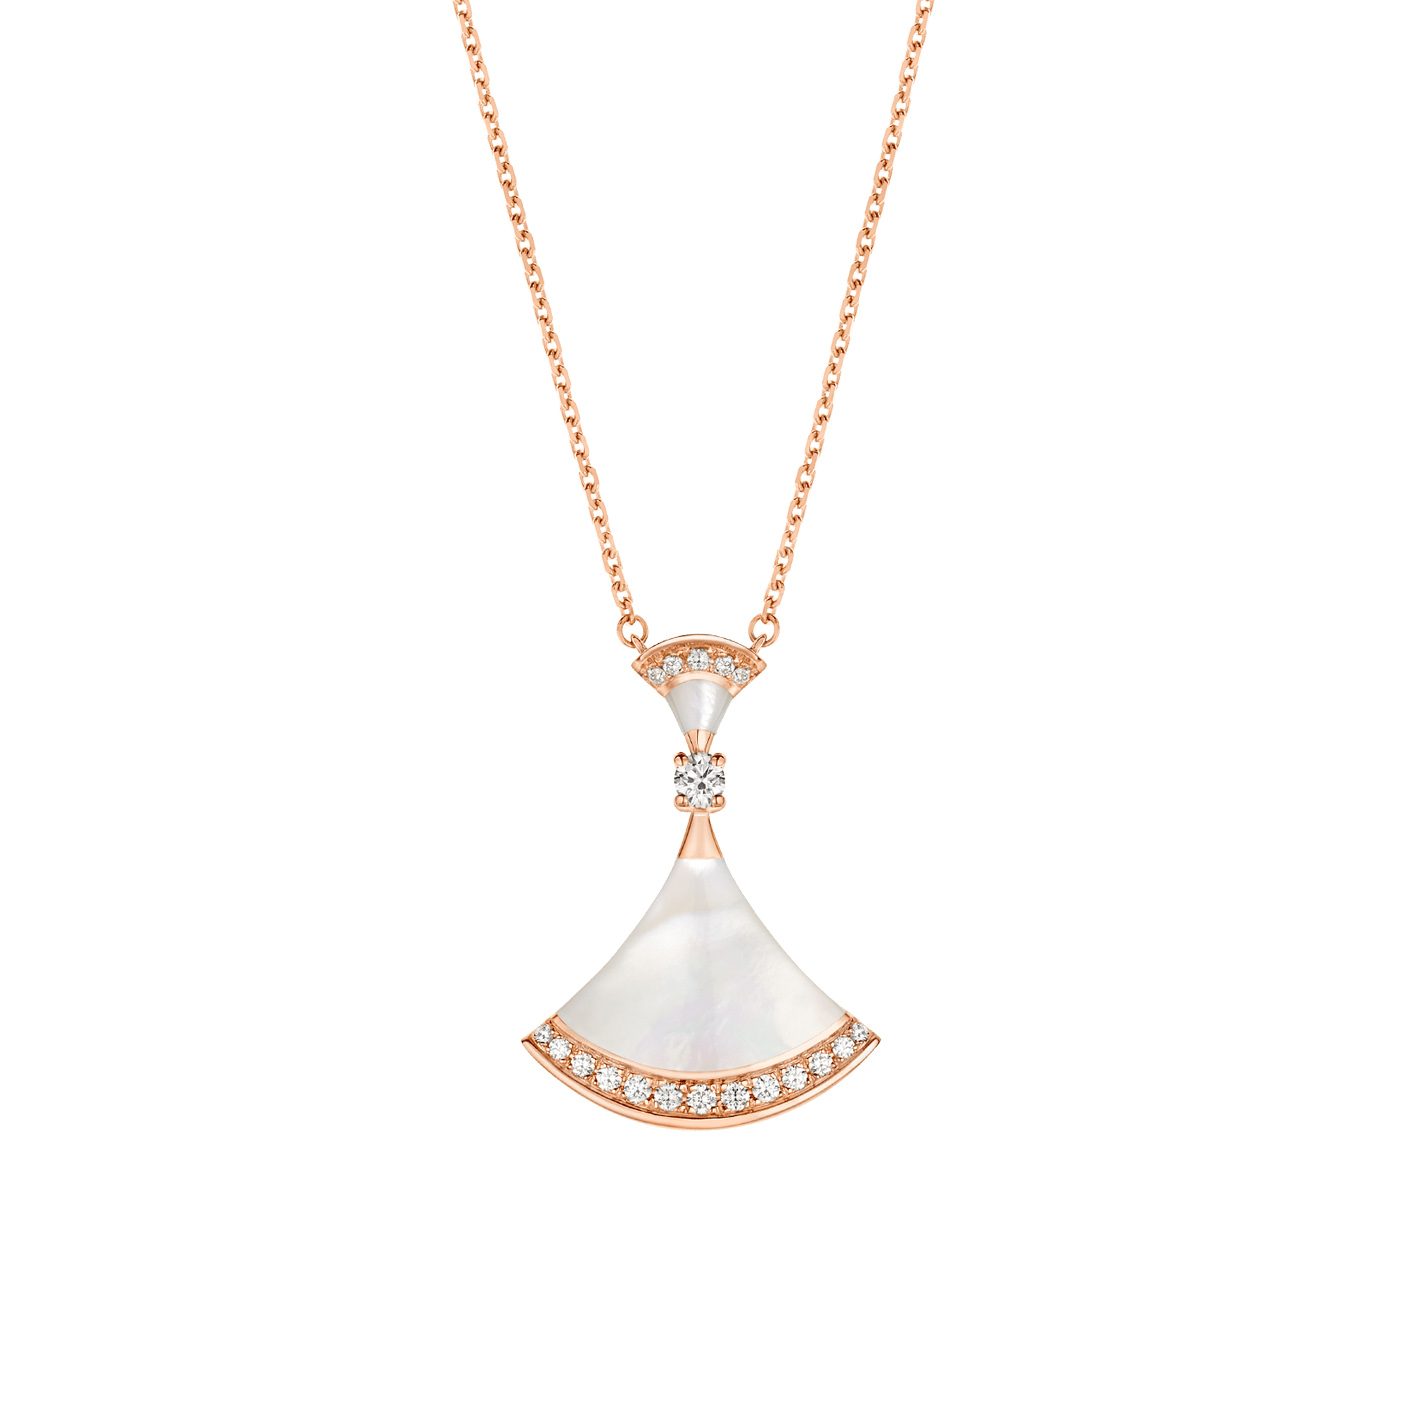 Grossist OEM ODM 18 kt roséguld OEM/ODM Smyckeshalsband med pärlemorelement, en rund briljantslipad diamant och pavédiamanter Specialdesignade smycken Leverantörer